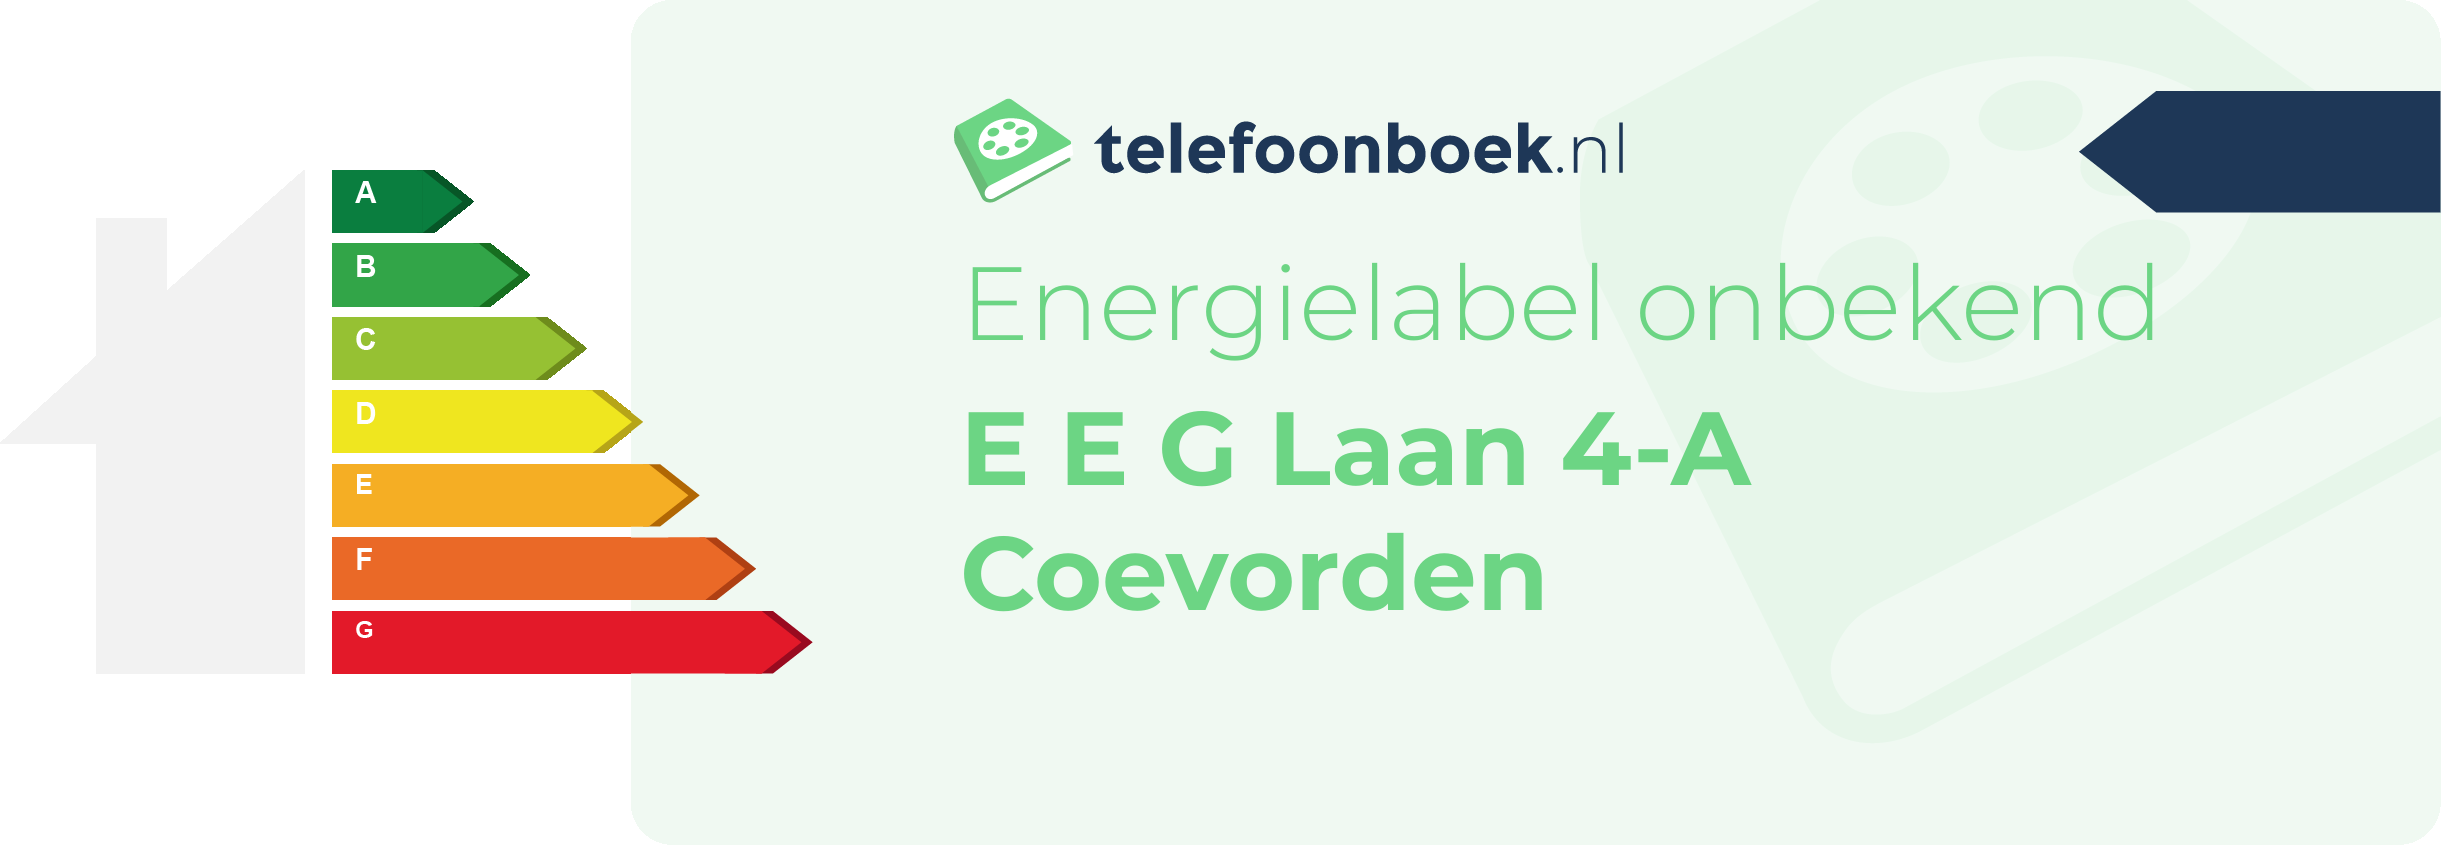 Energielabel E E G Laan 4-A Coevorden